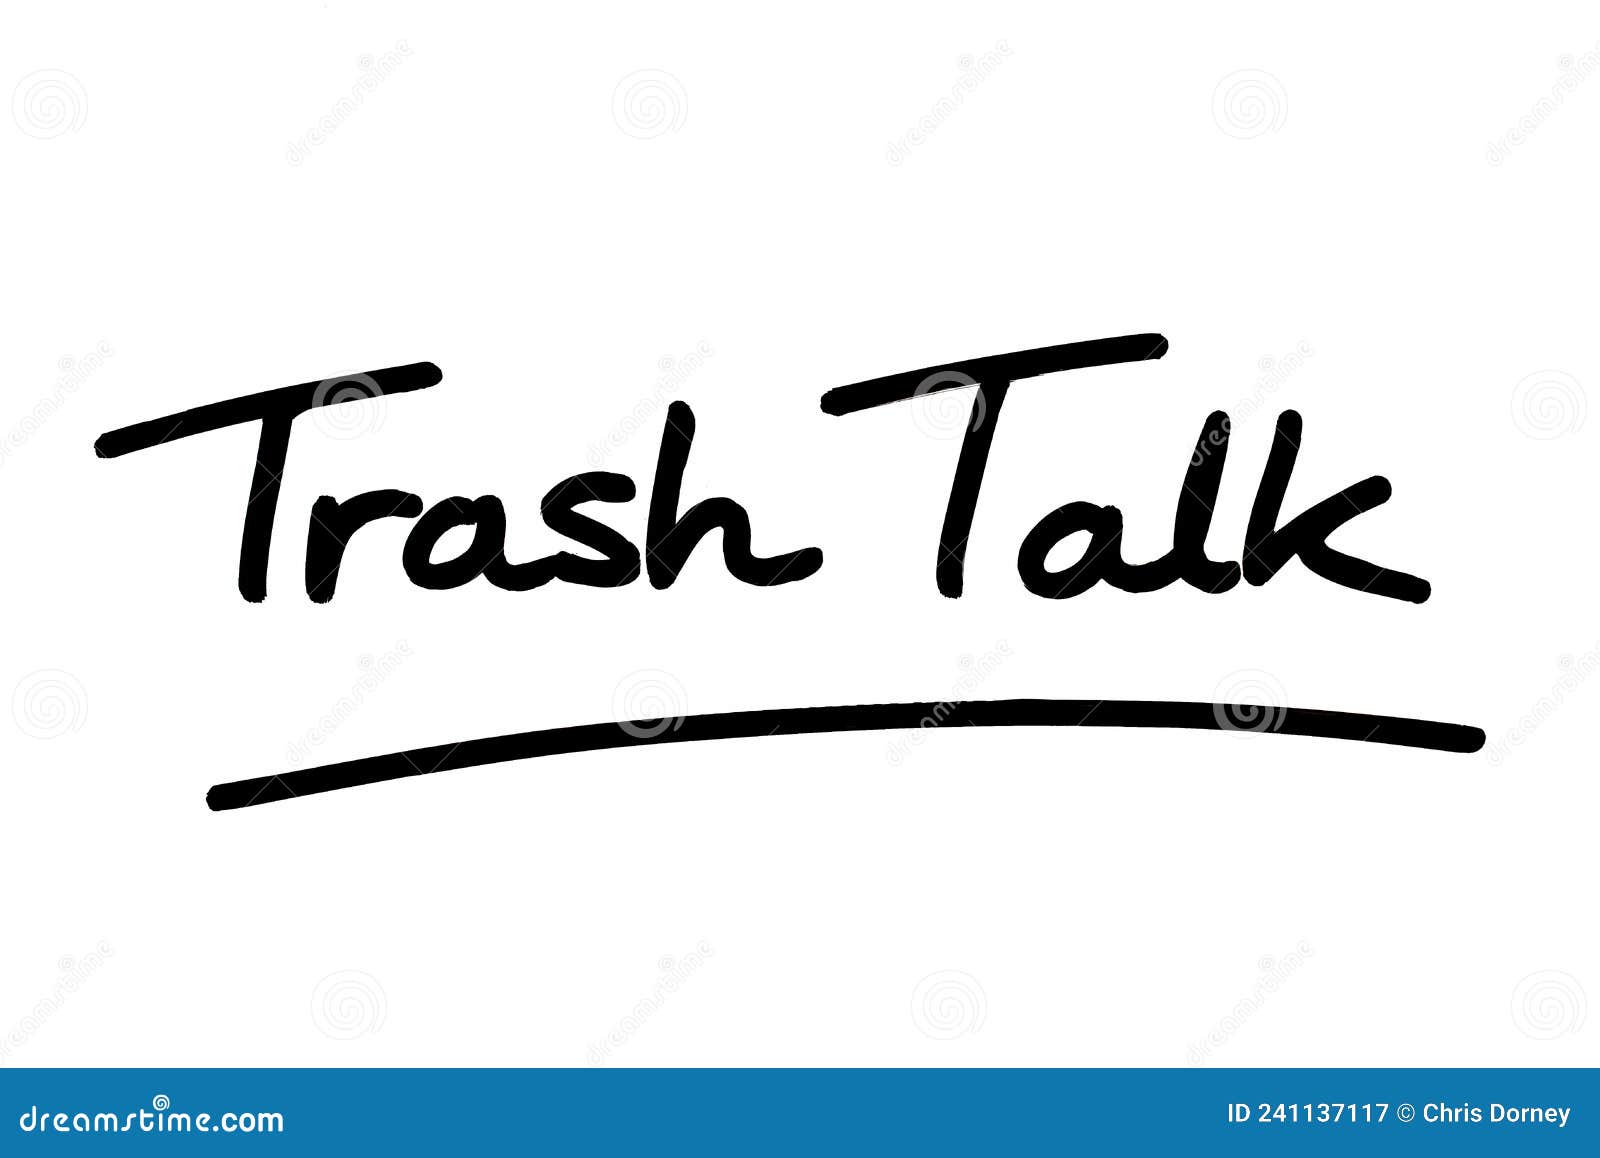 Trash Talkers Stock Photo - Download Image Now - Slander, 2015